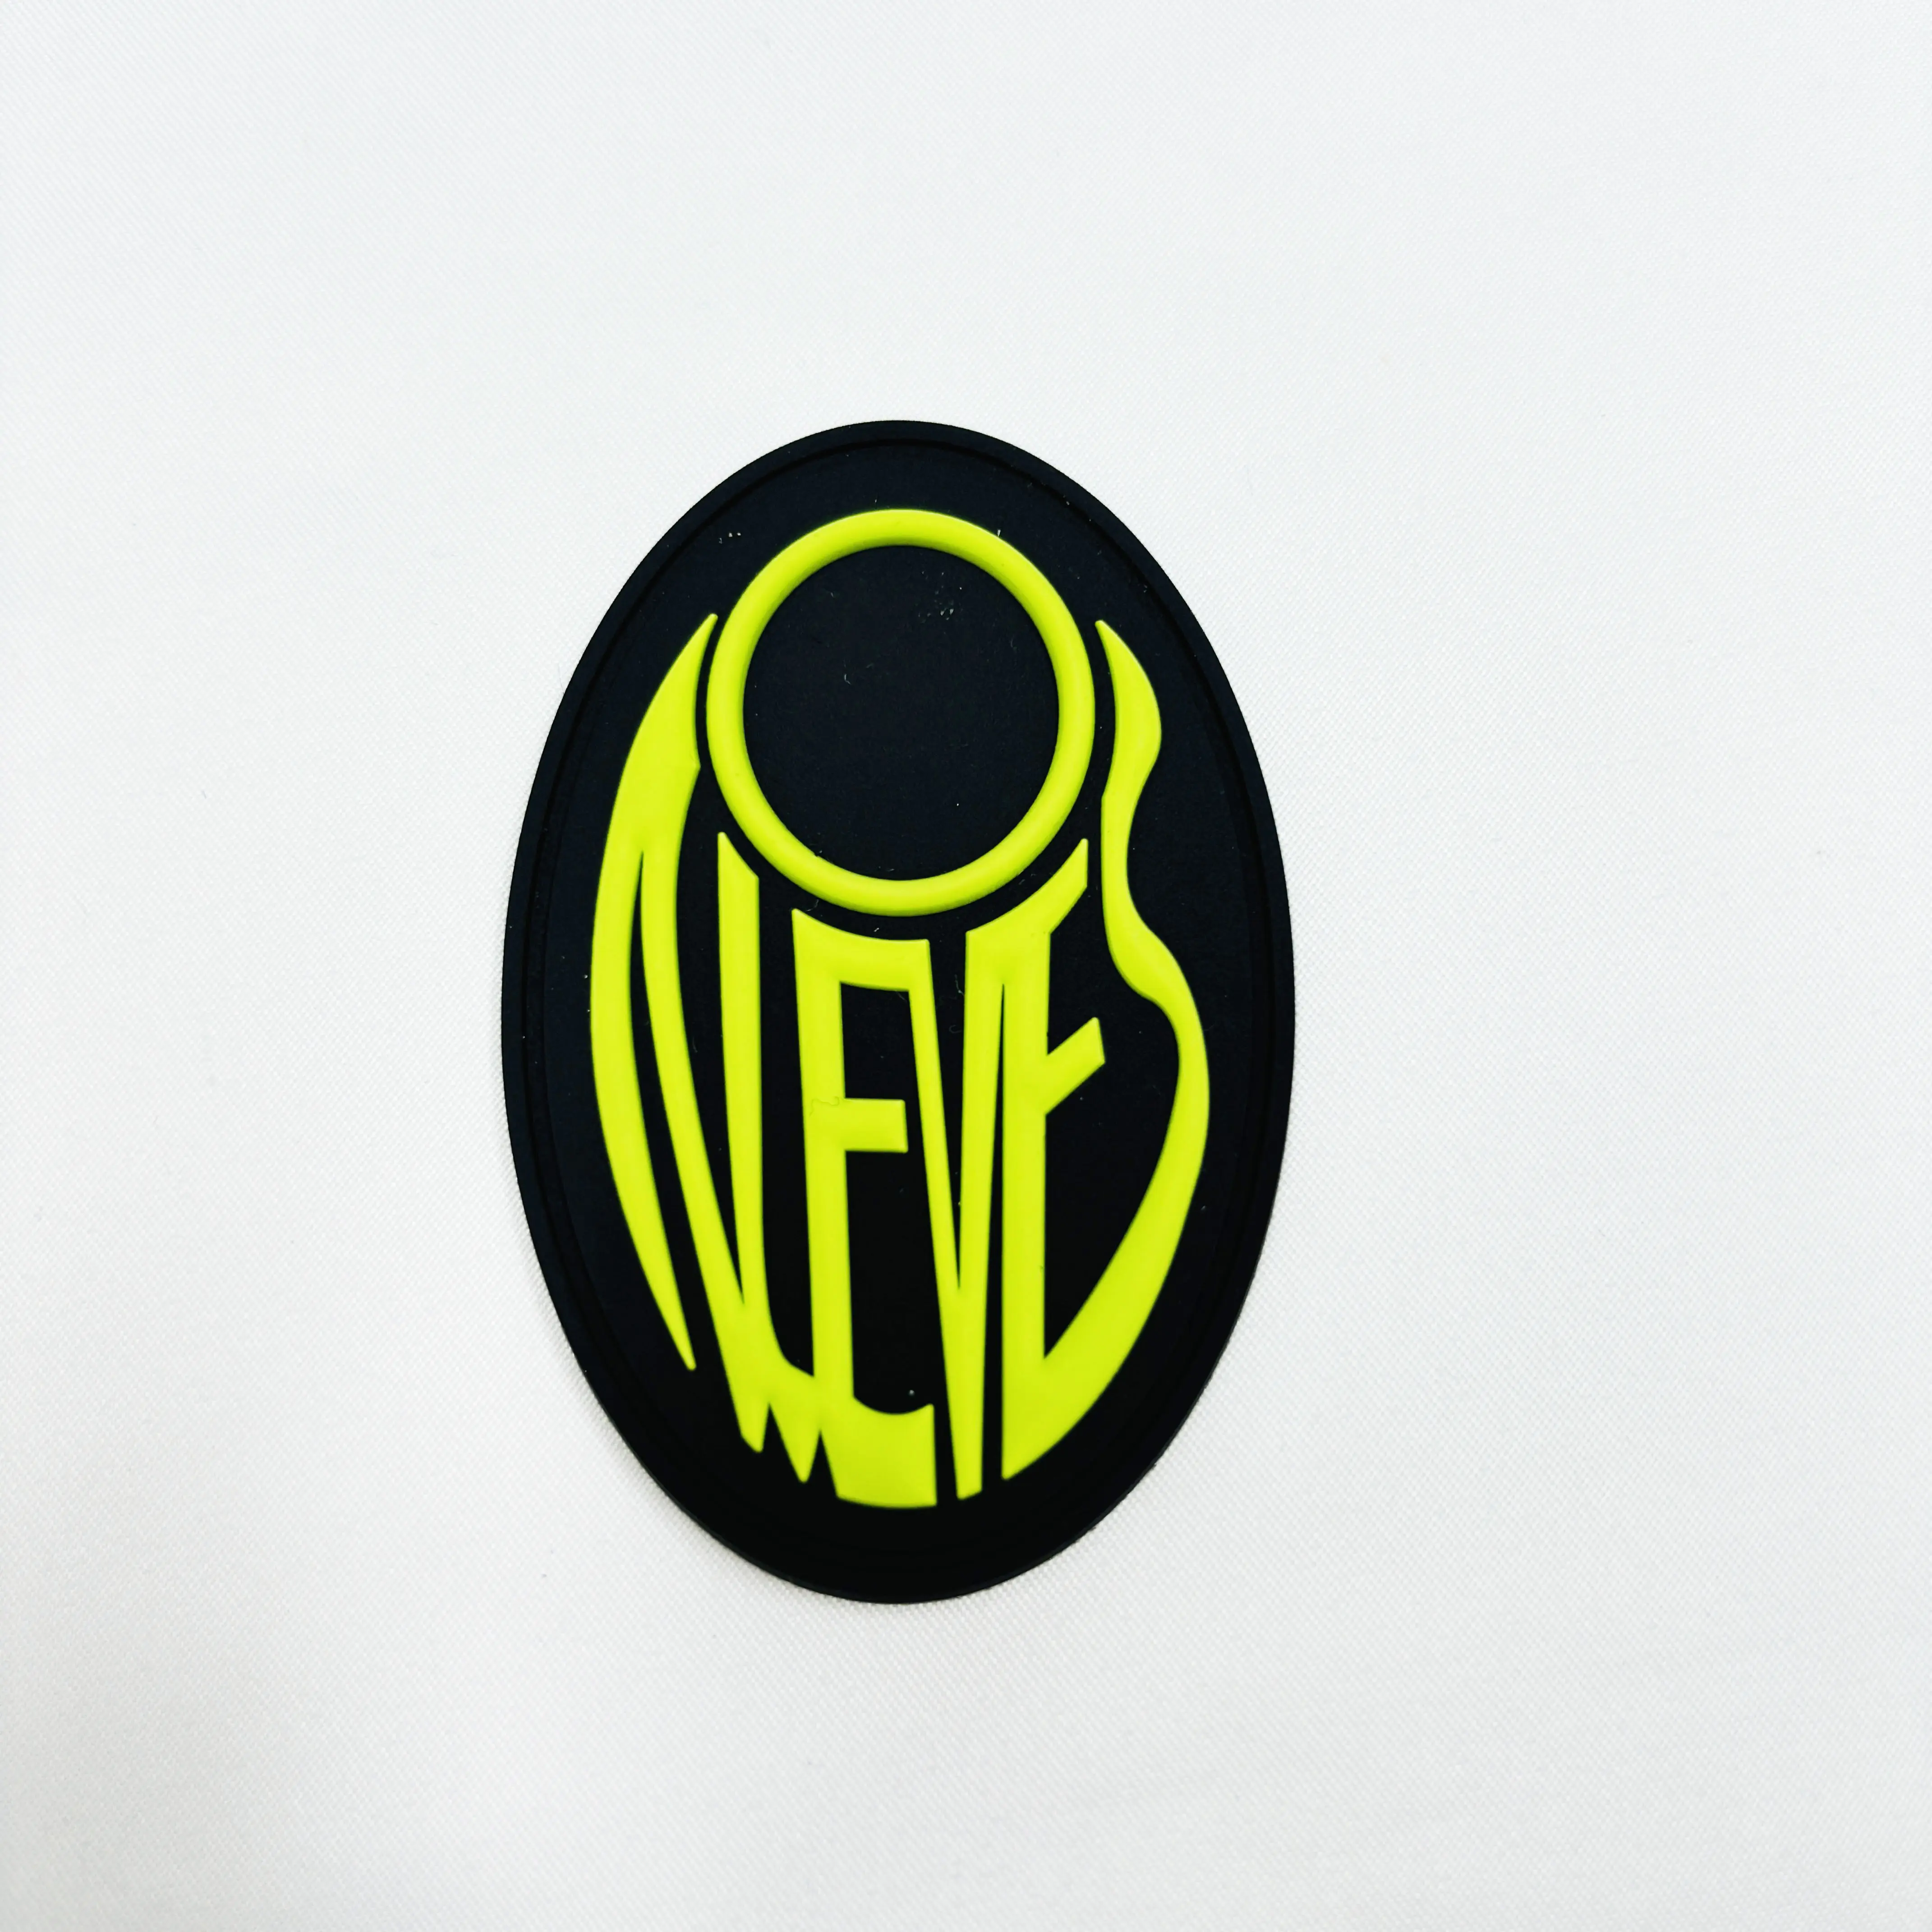 Персонализированный стиль Пользовательский логотип 3d Резиновый патч производитель ПВХ патч для одежды джинсы